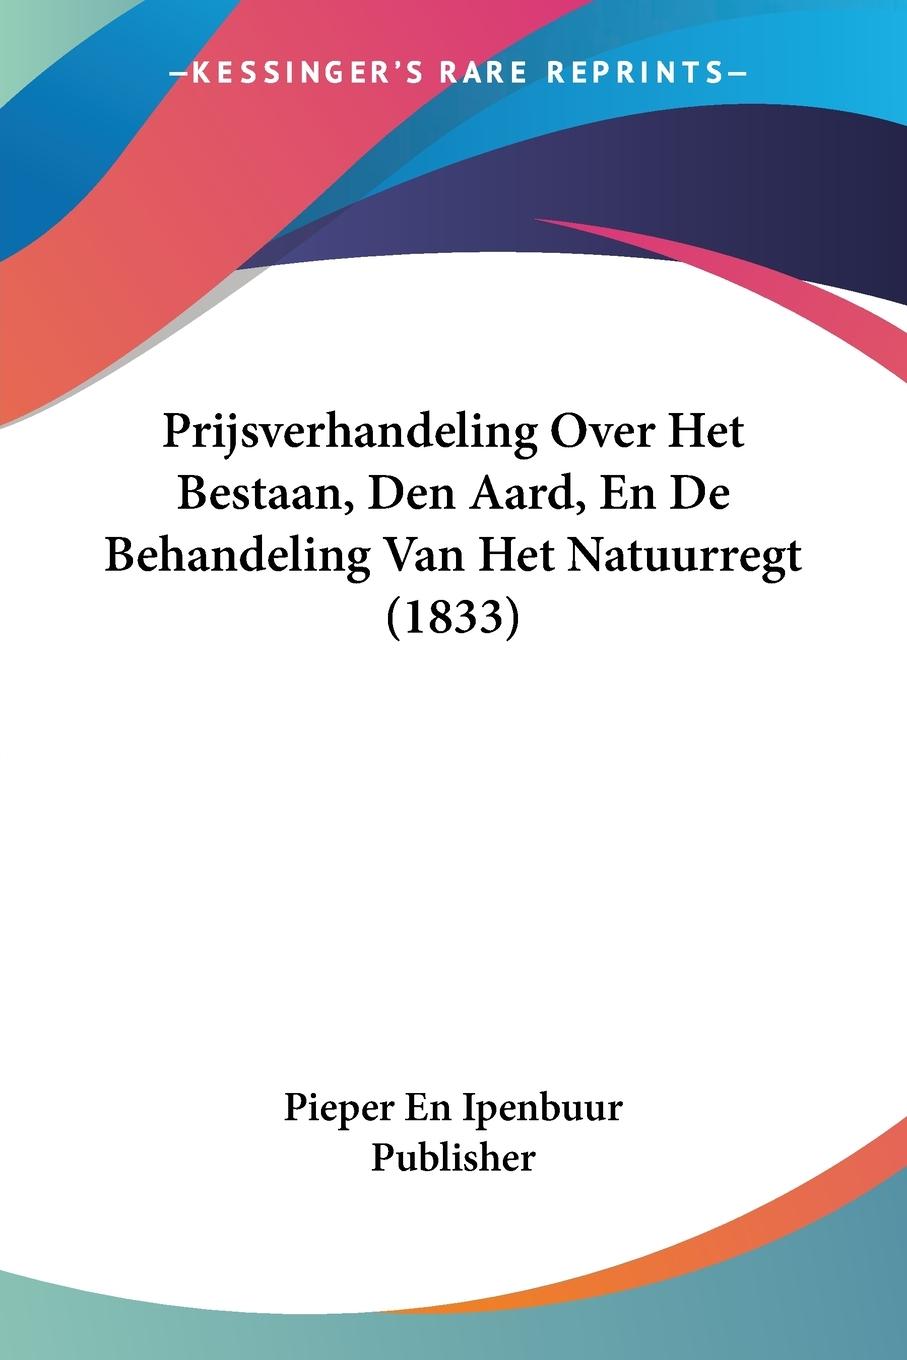 Prijsverhandeling Over Het Bestaan, Den Aard, En De Behandeling Van Het Natuurregt (1833) - Pieper En Ipenbuur Publisher